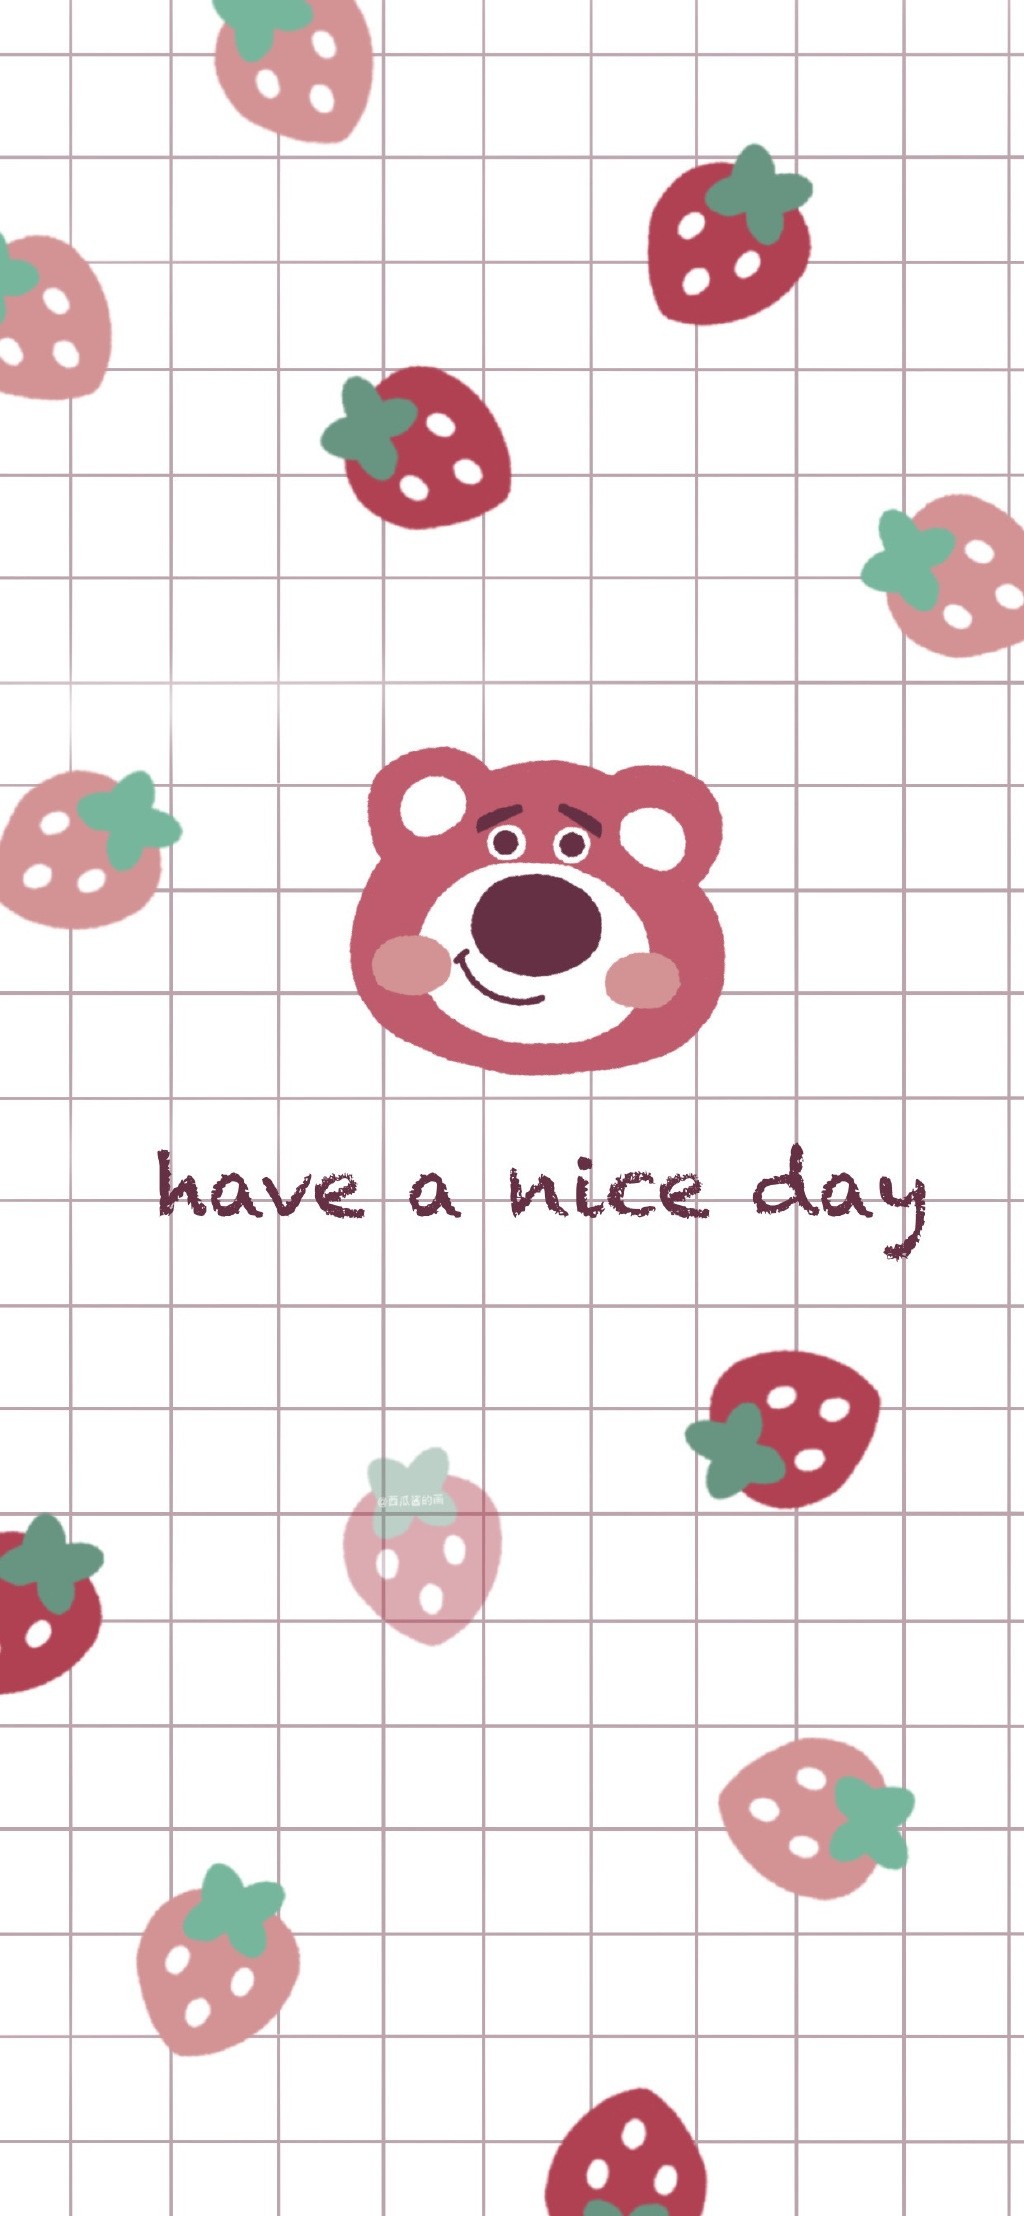 草莓熊可爱插画背景手机壁纸